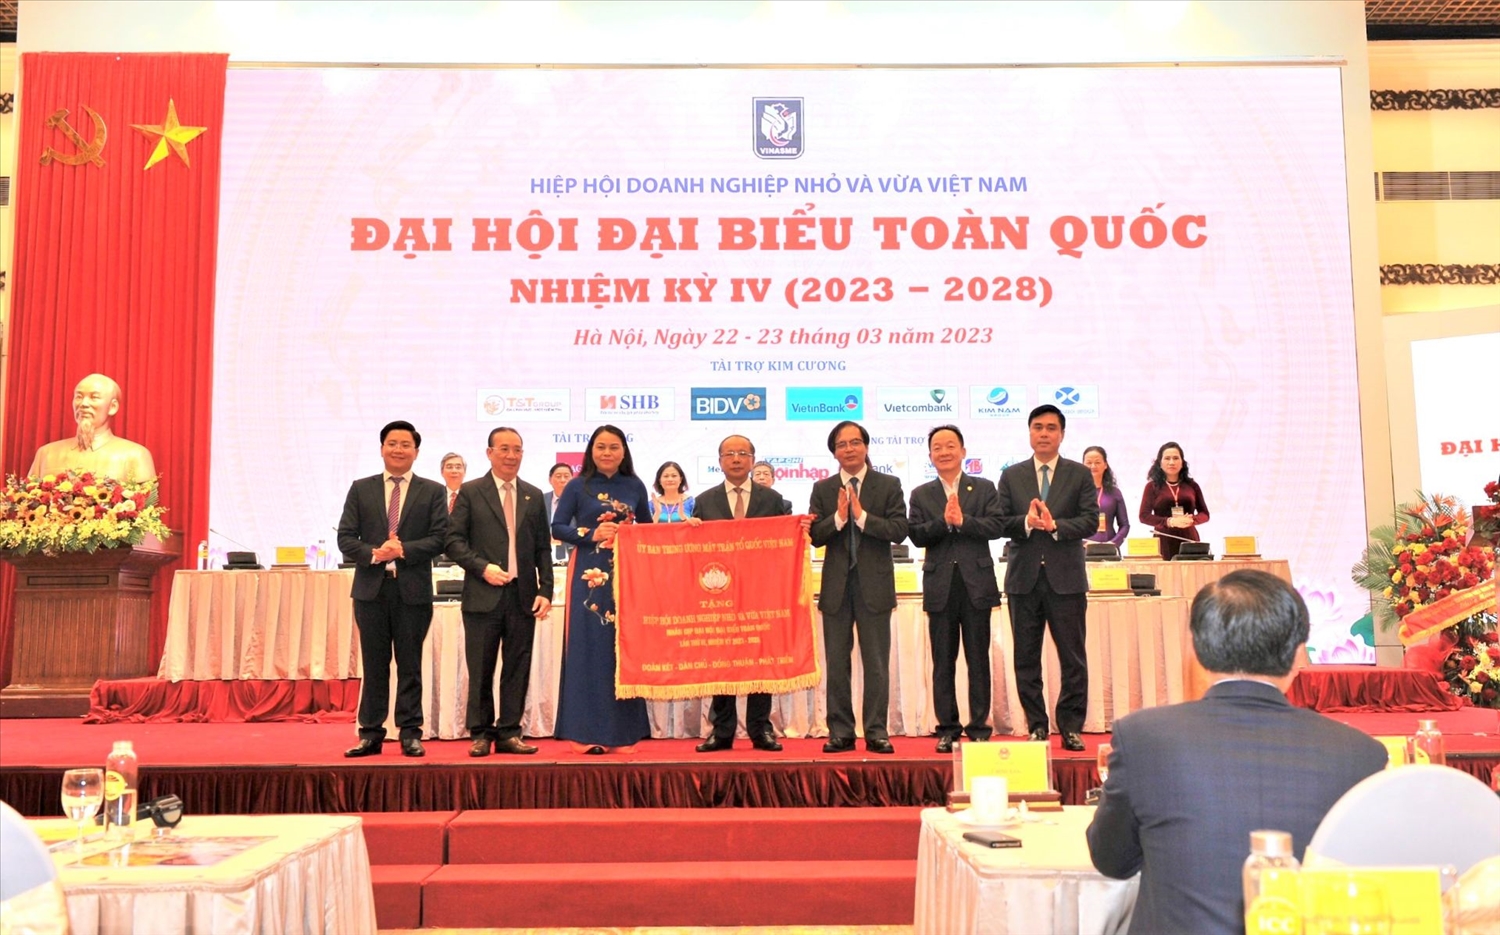 Chủ tịch SHB Đỗ Quang Hiển làm Phó chủ tịch Hiệp hội Doanh nghiệp nhỏ và vừa Việt Nam 1